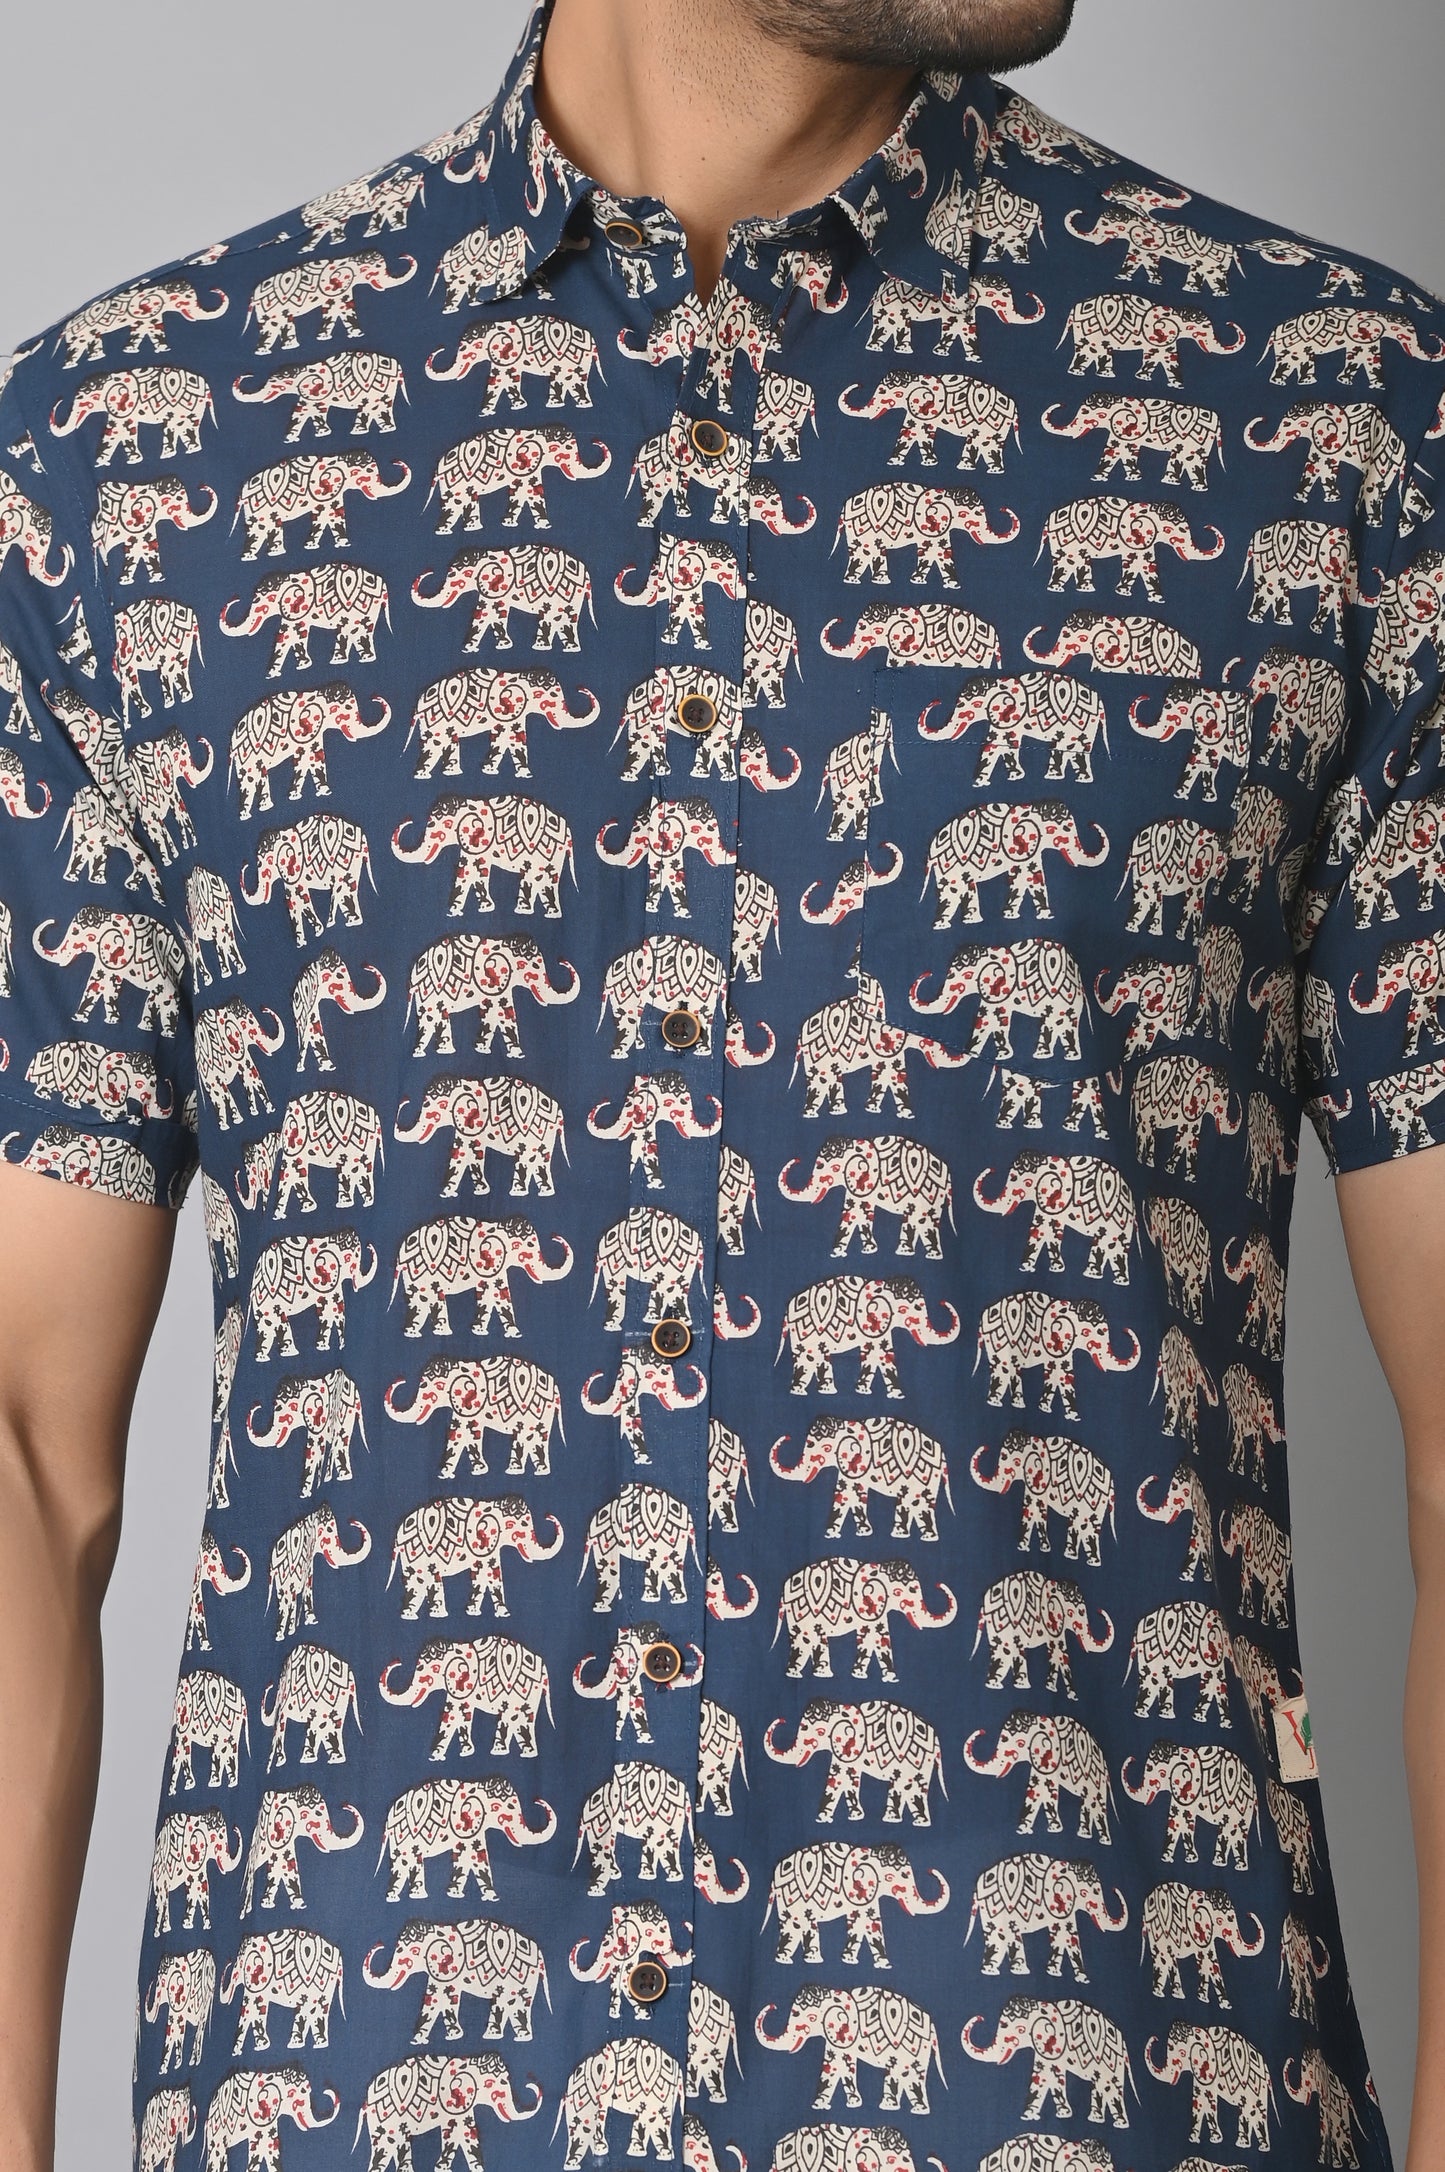 VJR Elephant Print Trending Shirt